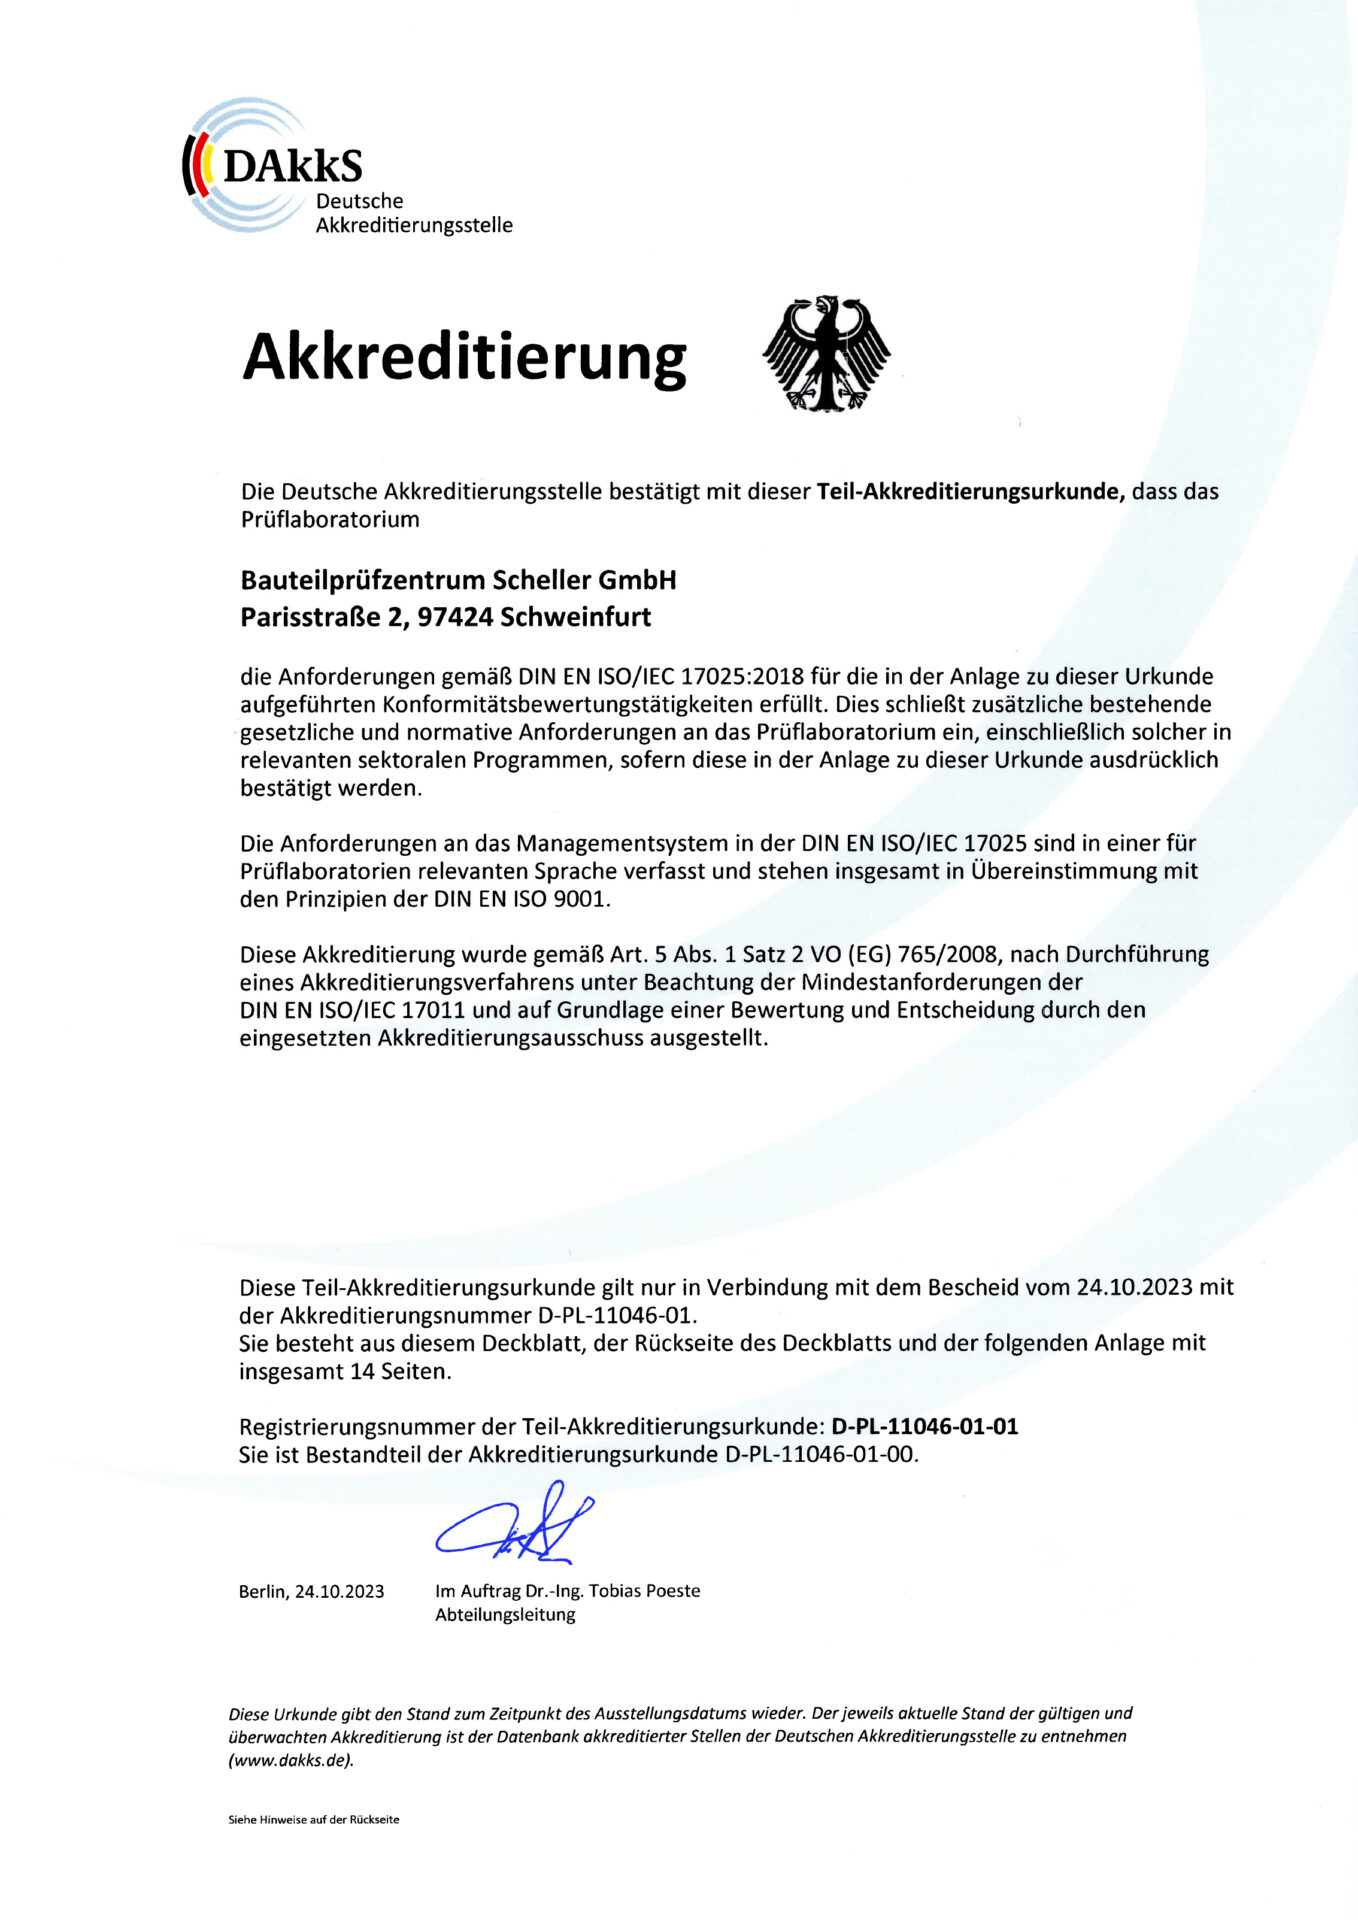 Akkreditierungsurkunde nach DIN EN ISO/IEC 17025 BPZS Bauteilprüfzentrum Scheller GmbH